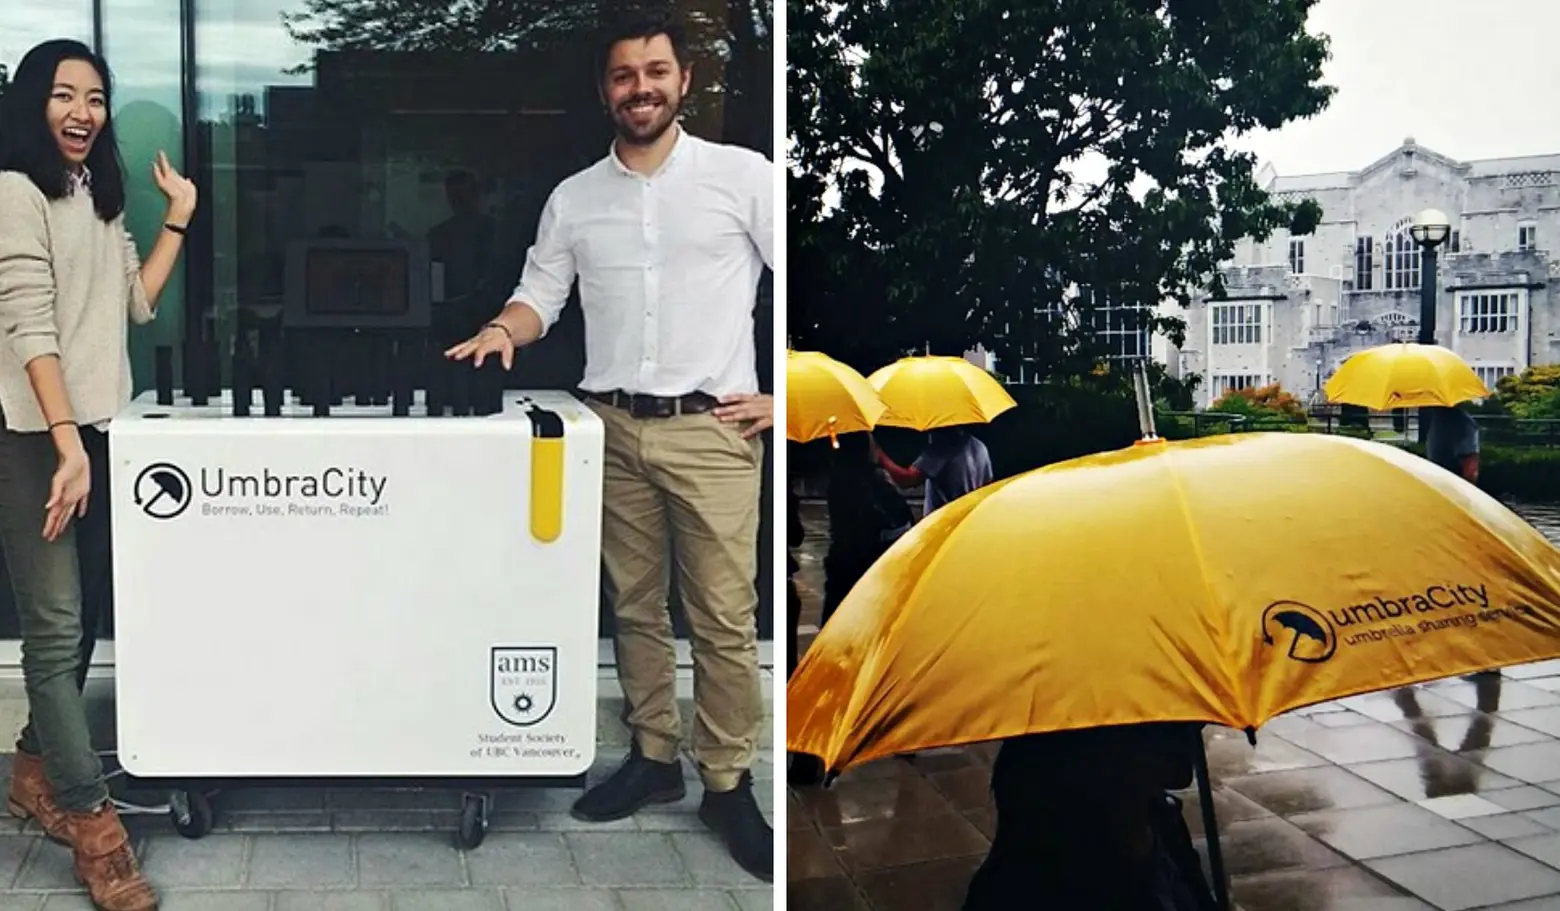 UmbraCity, umbrella share program, rental umbrellas